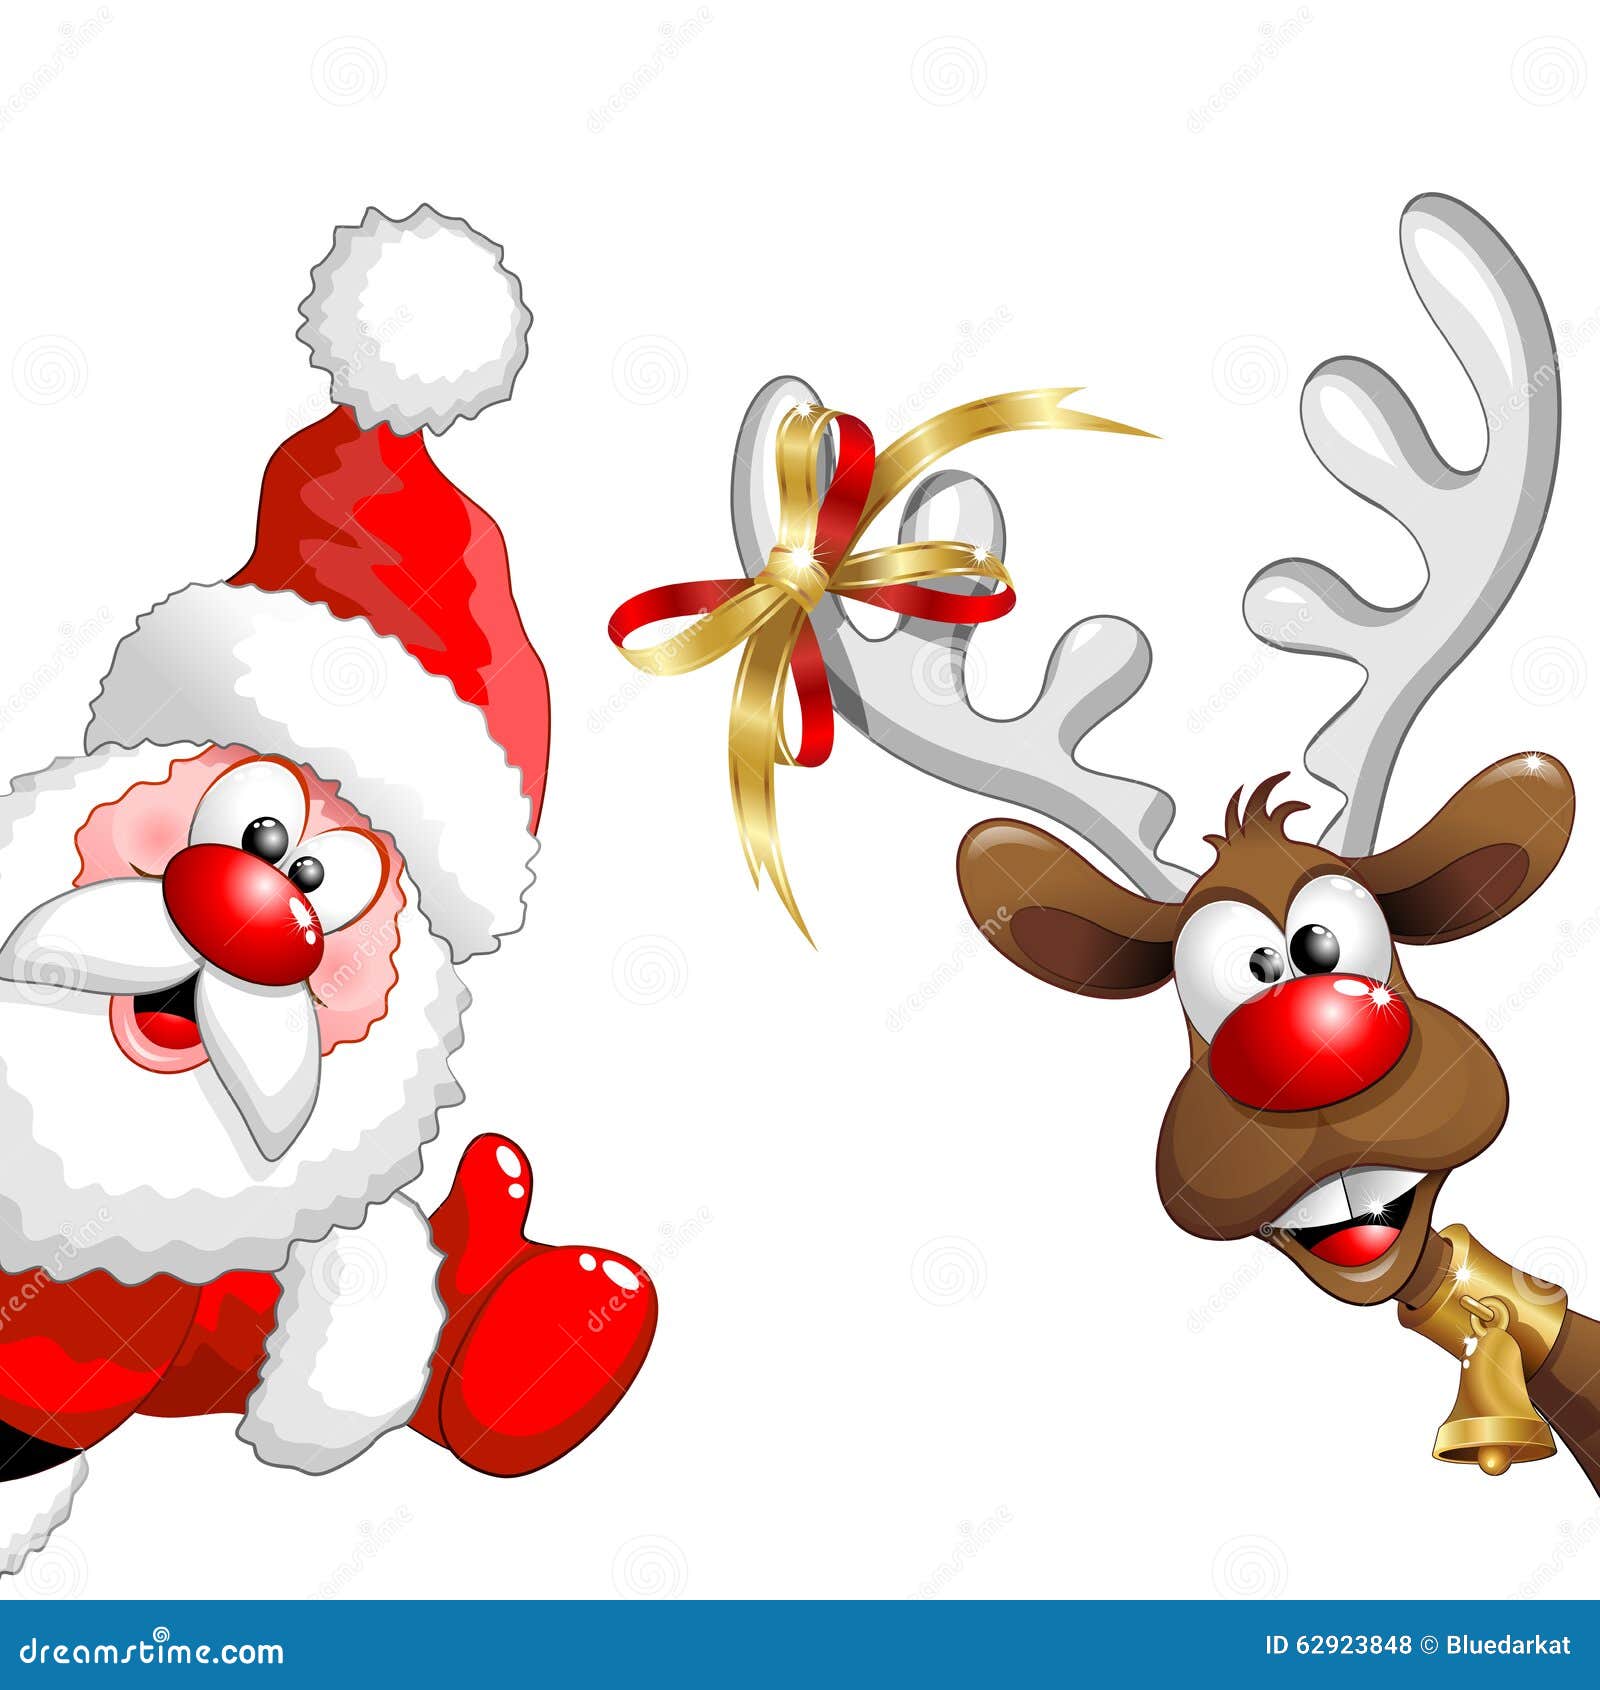 Christmas Reindeer And Santa Fun Cartoons Stock Vector ...